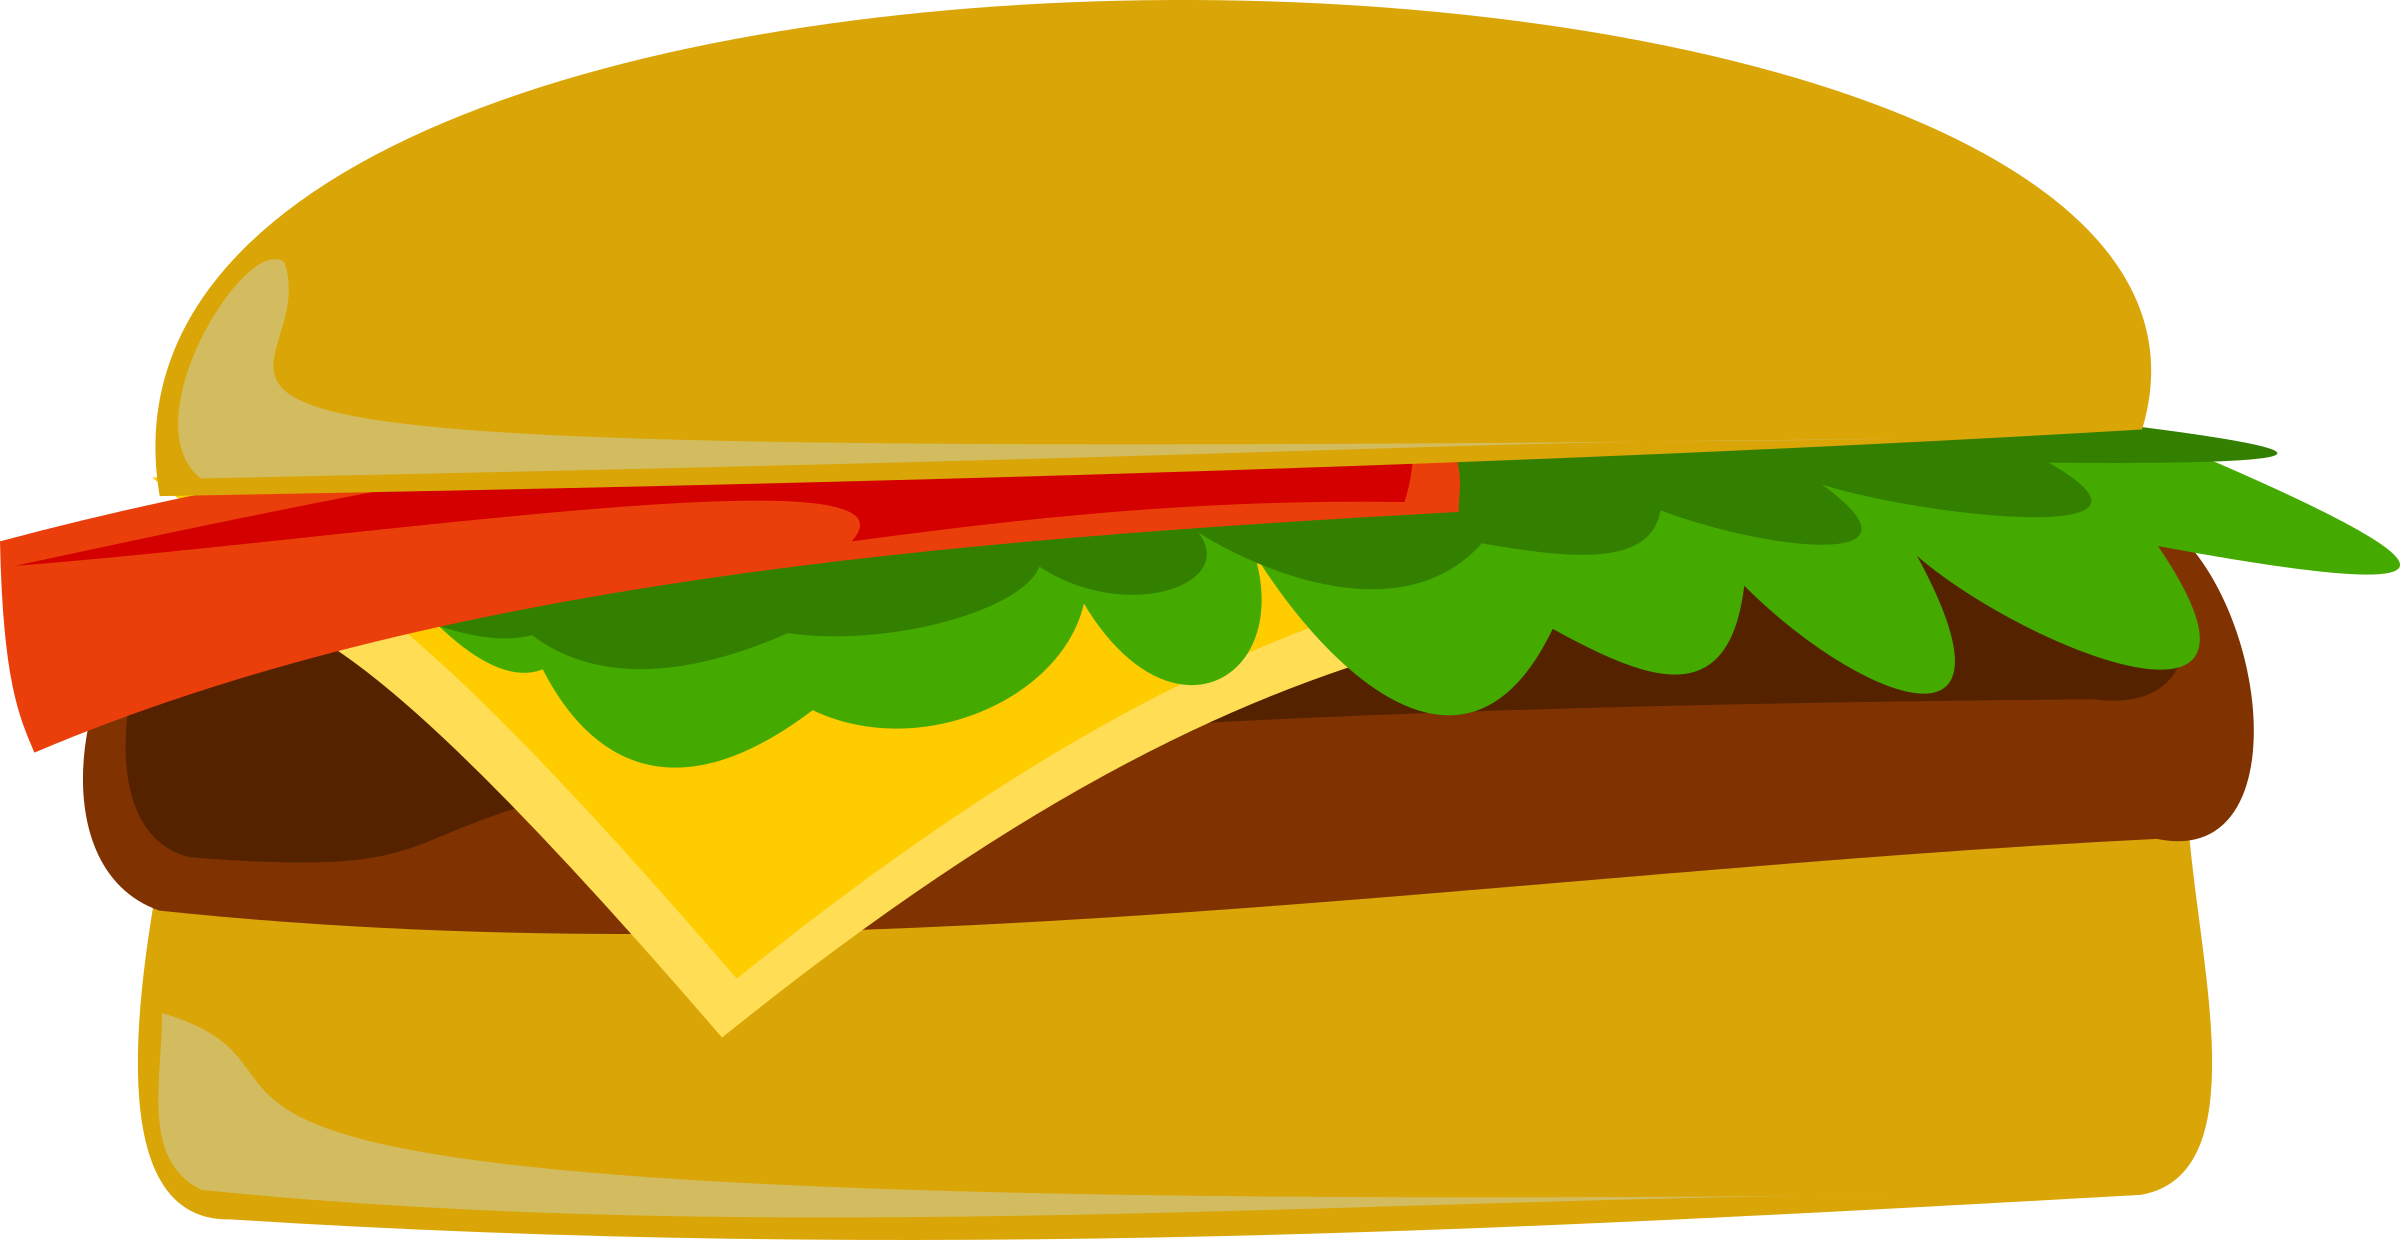 Hamburger clipart buger. Cheese burger big image